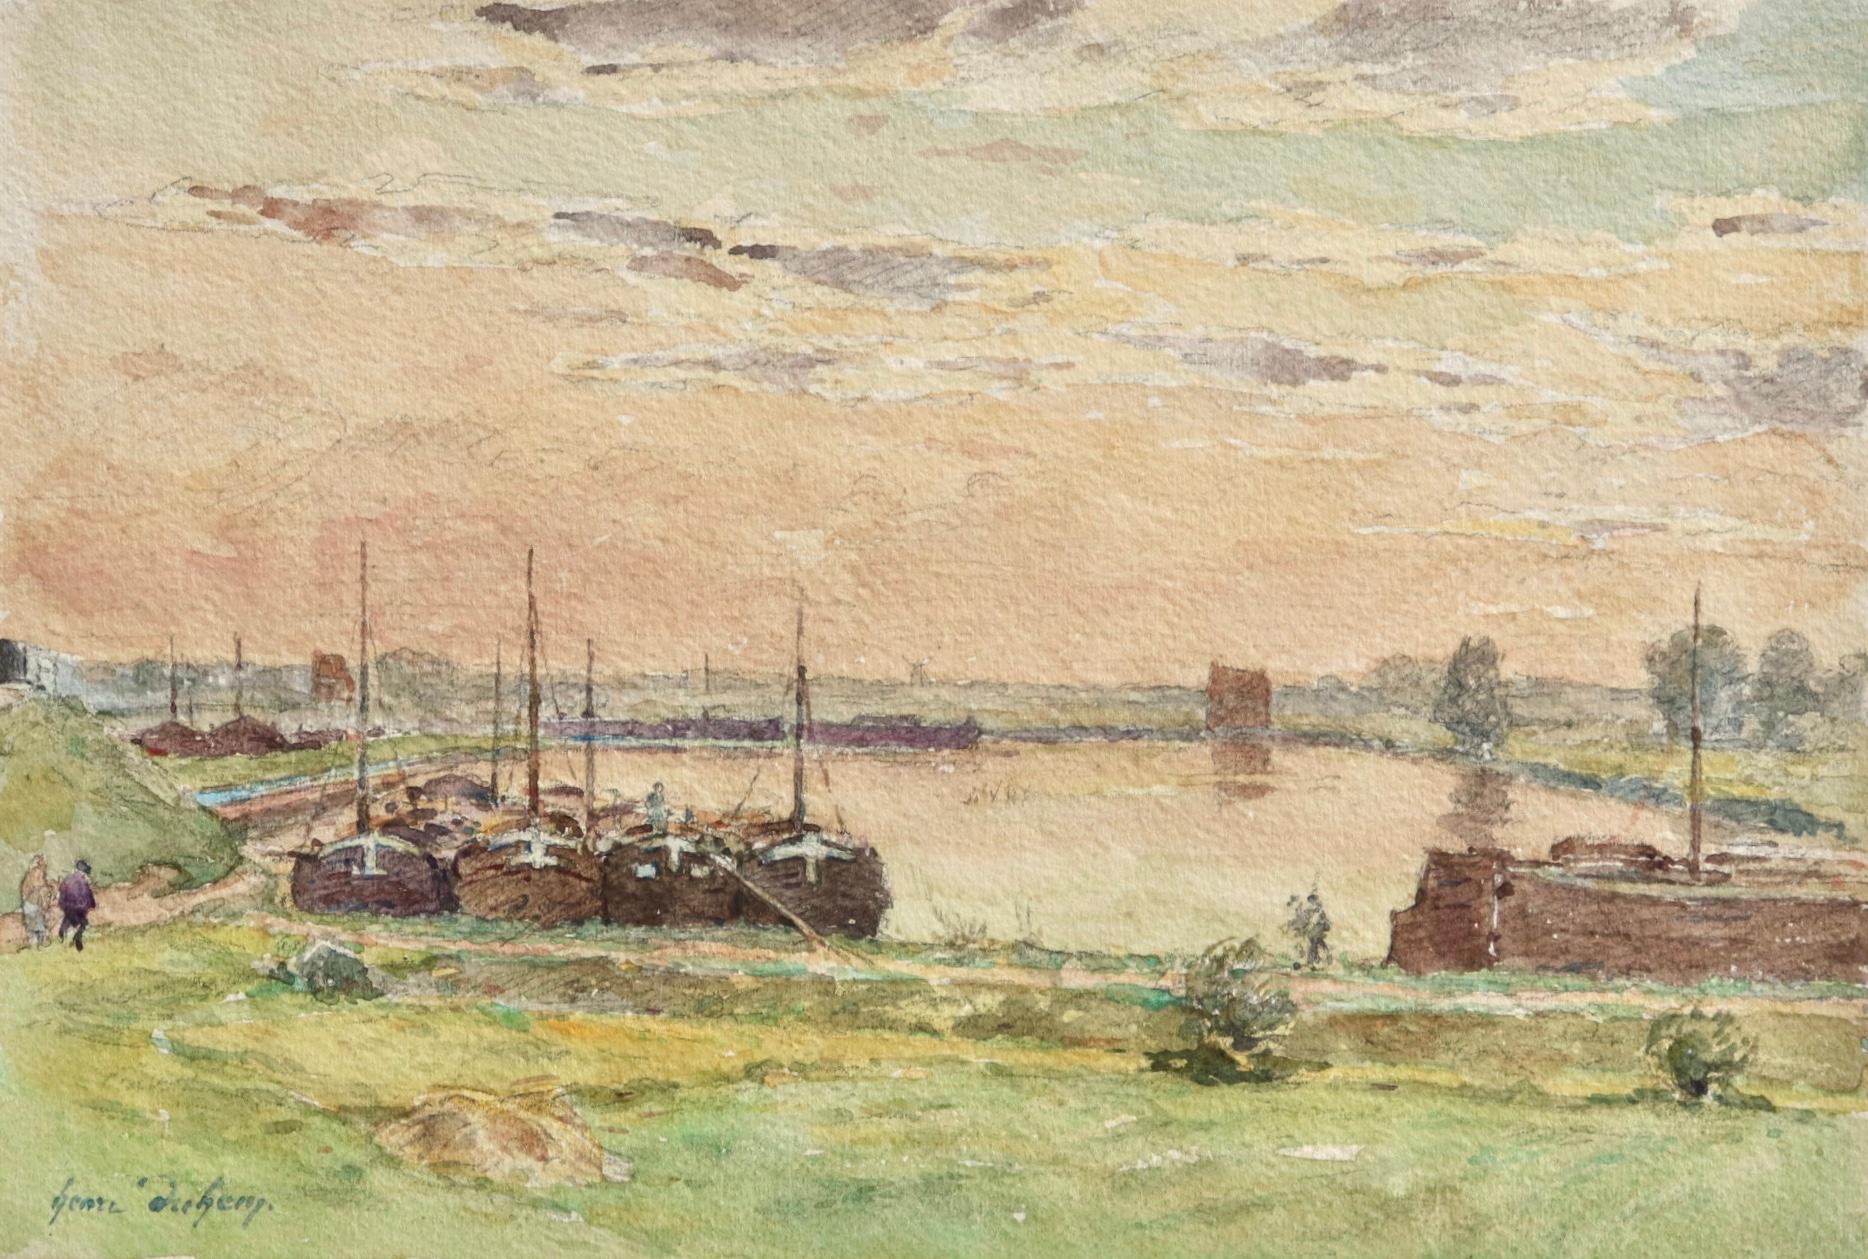 Aquarell auf Papier von Henri Duhem, französischer Impressionist, um 1910. Es zeigt vertäute Fischerboote, während der Himmel in der Ferne bei Sonnenuntergang rosa leuchtet. Signiert unten links. Dieses Stück ist derzeit nicht gerahmt, aber ein